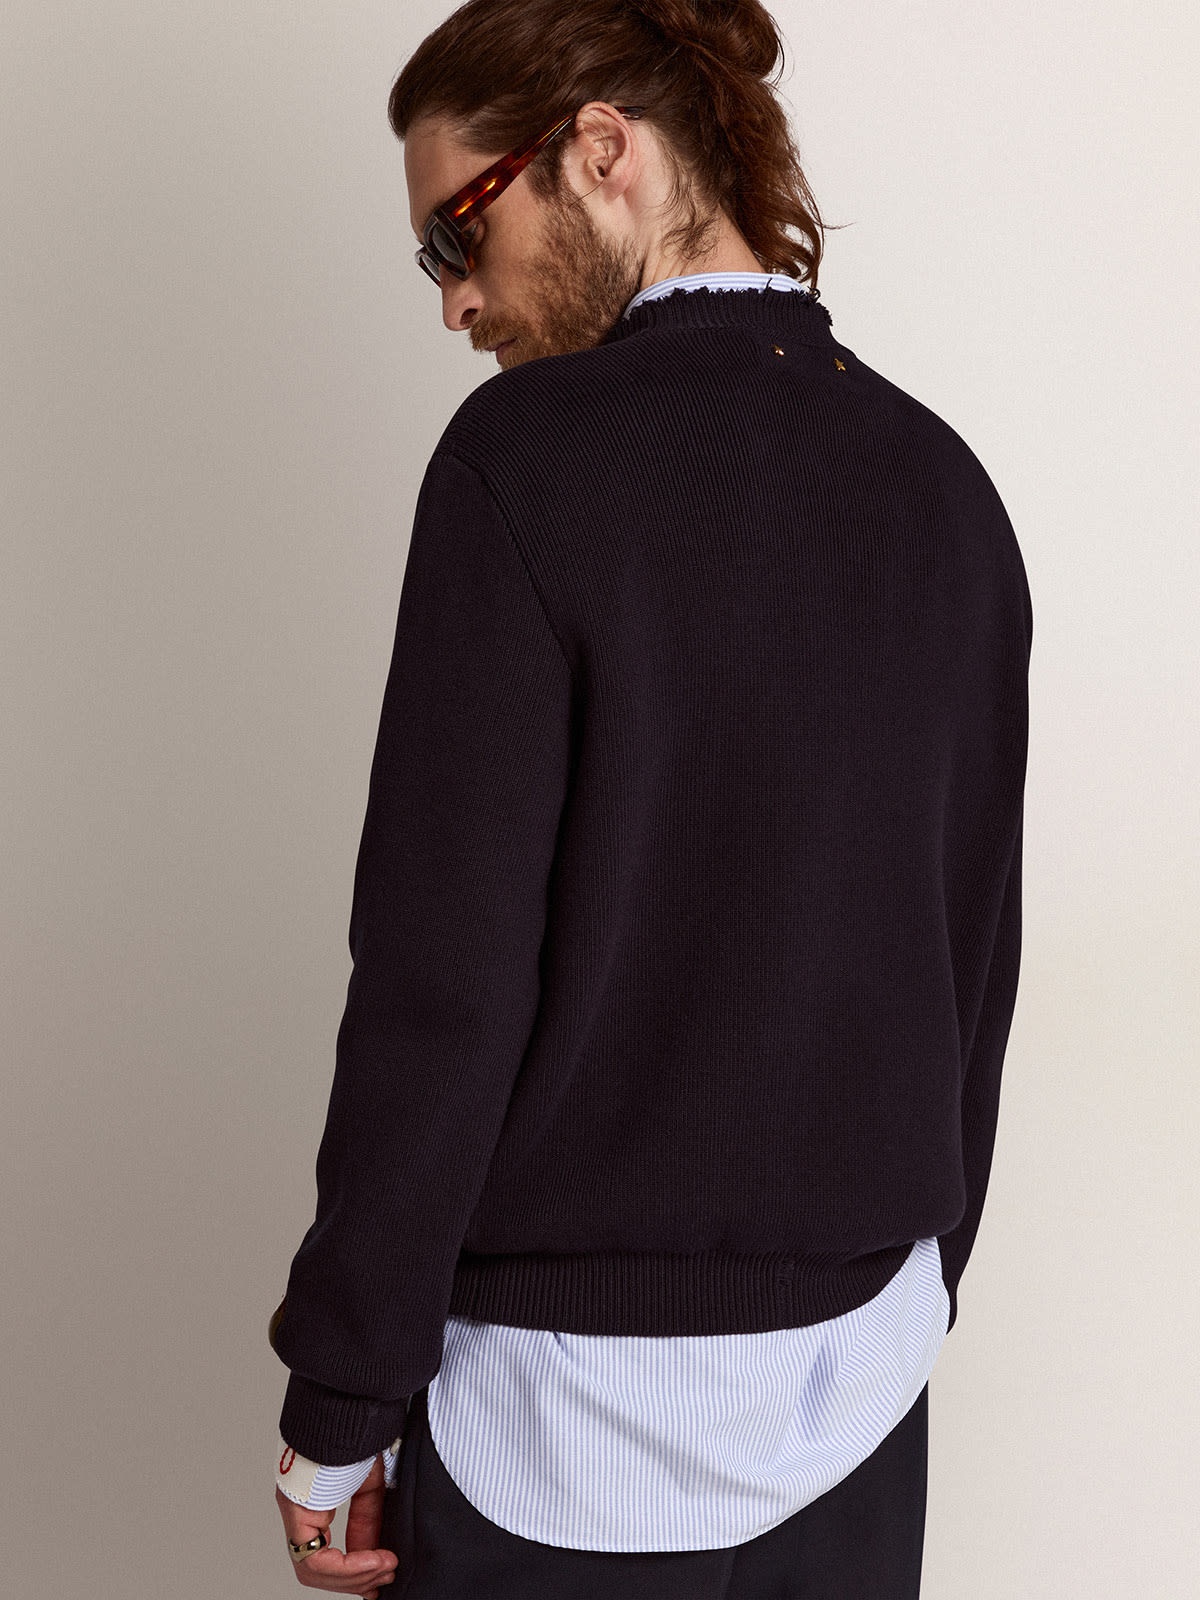 Men’s round-neck sweater in dark blue cotton - 4